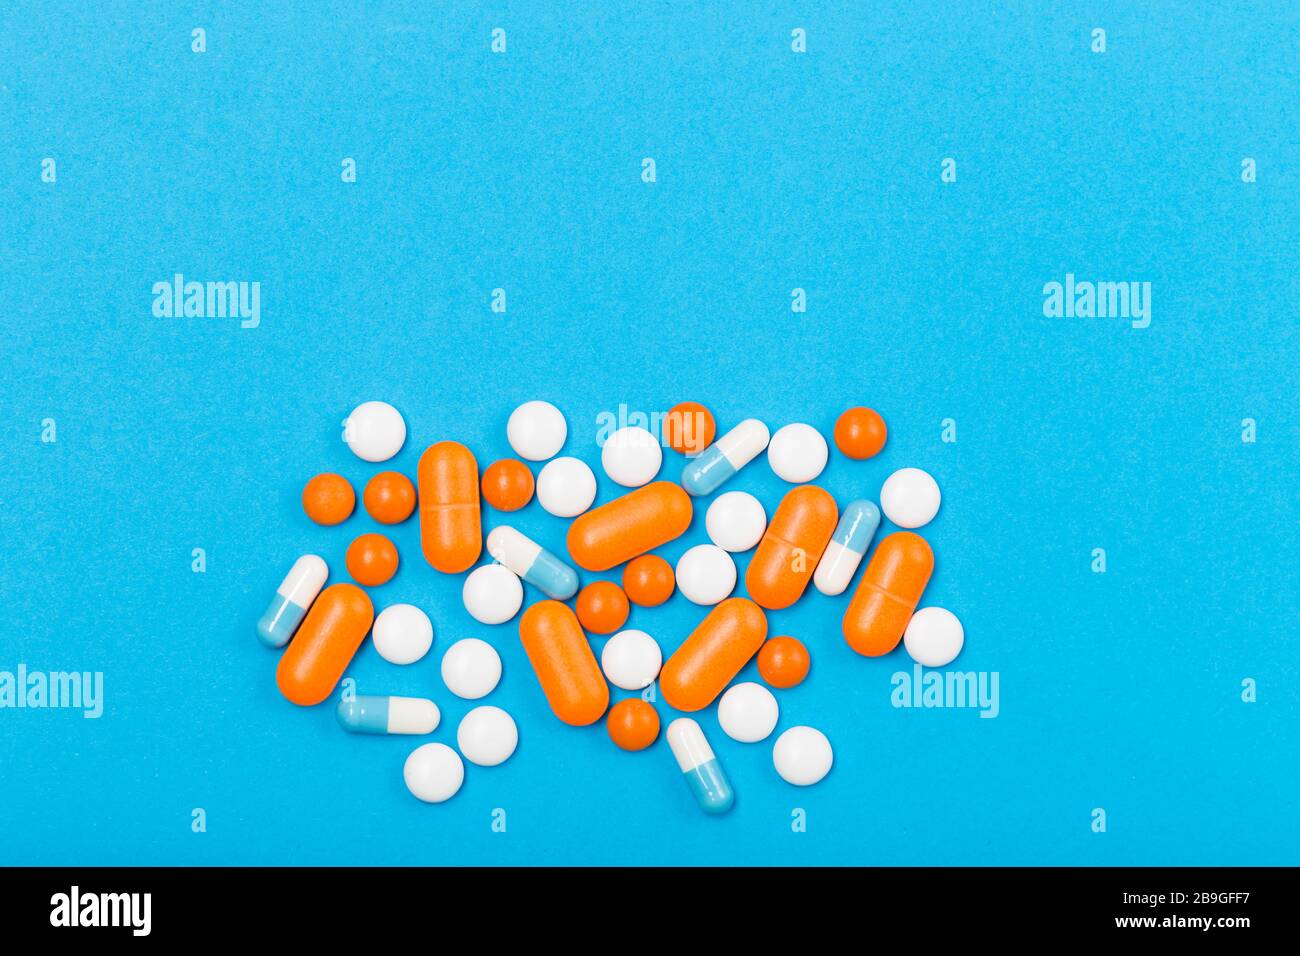 Assortiment de pilules, comprimés et capsules de médecine pharmaceutique sur fond bleu. Espace libre. Concept de santé. Banque D'Images